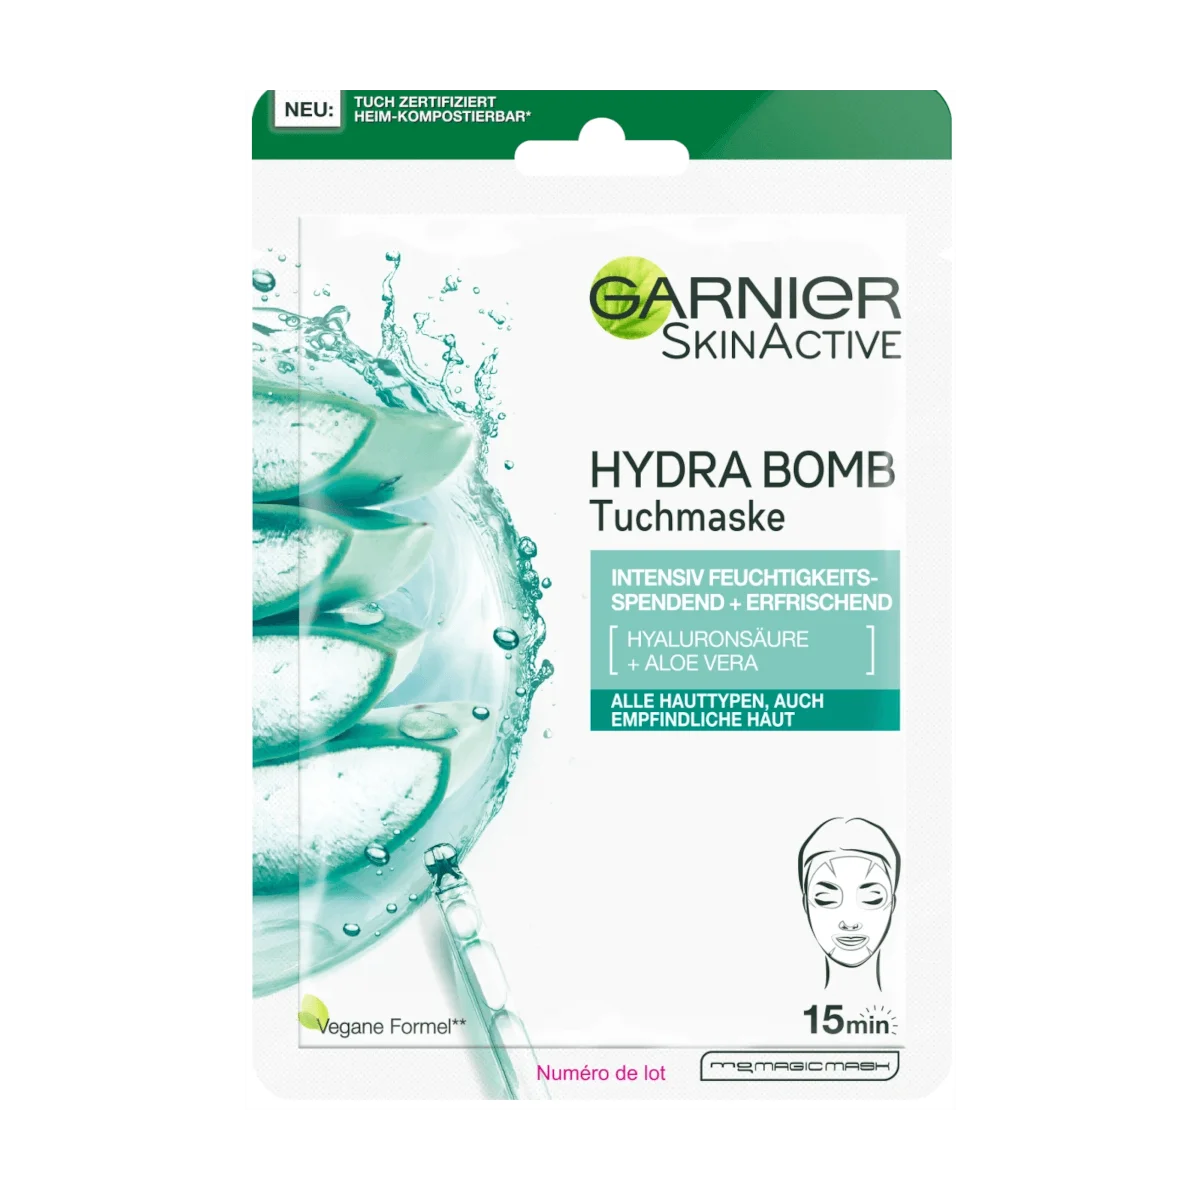 Garnier SkinActive Hydra Bomb Tuchmaske Intensiv Feuchtigkeitsspendend + Erfrischend, 1 Stk